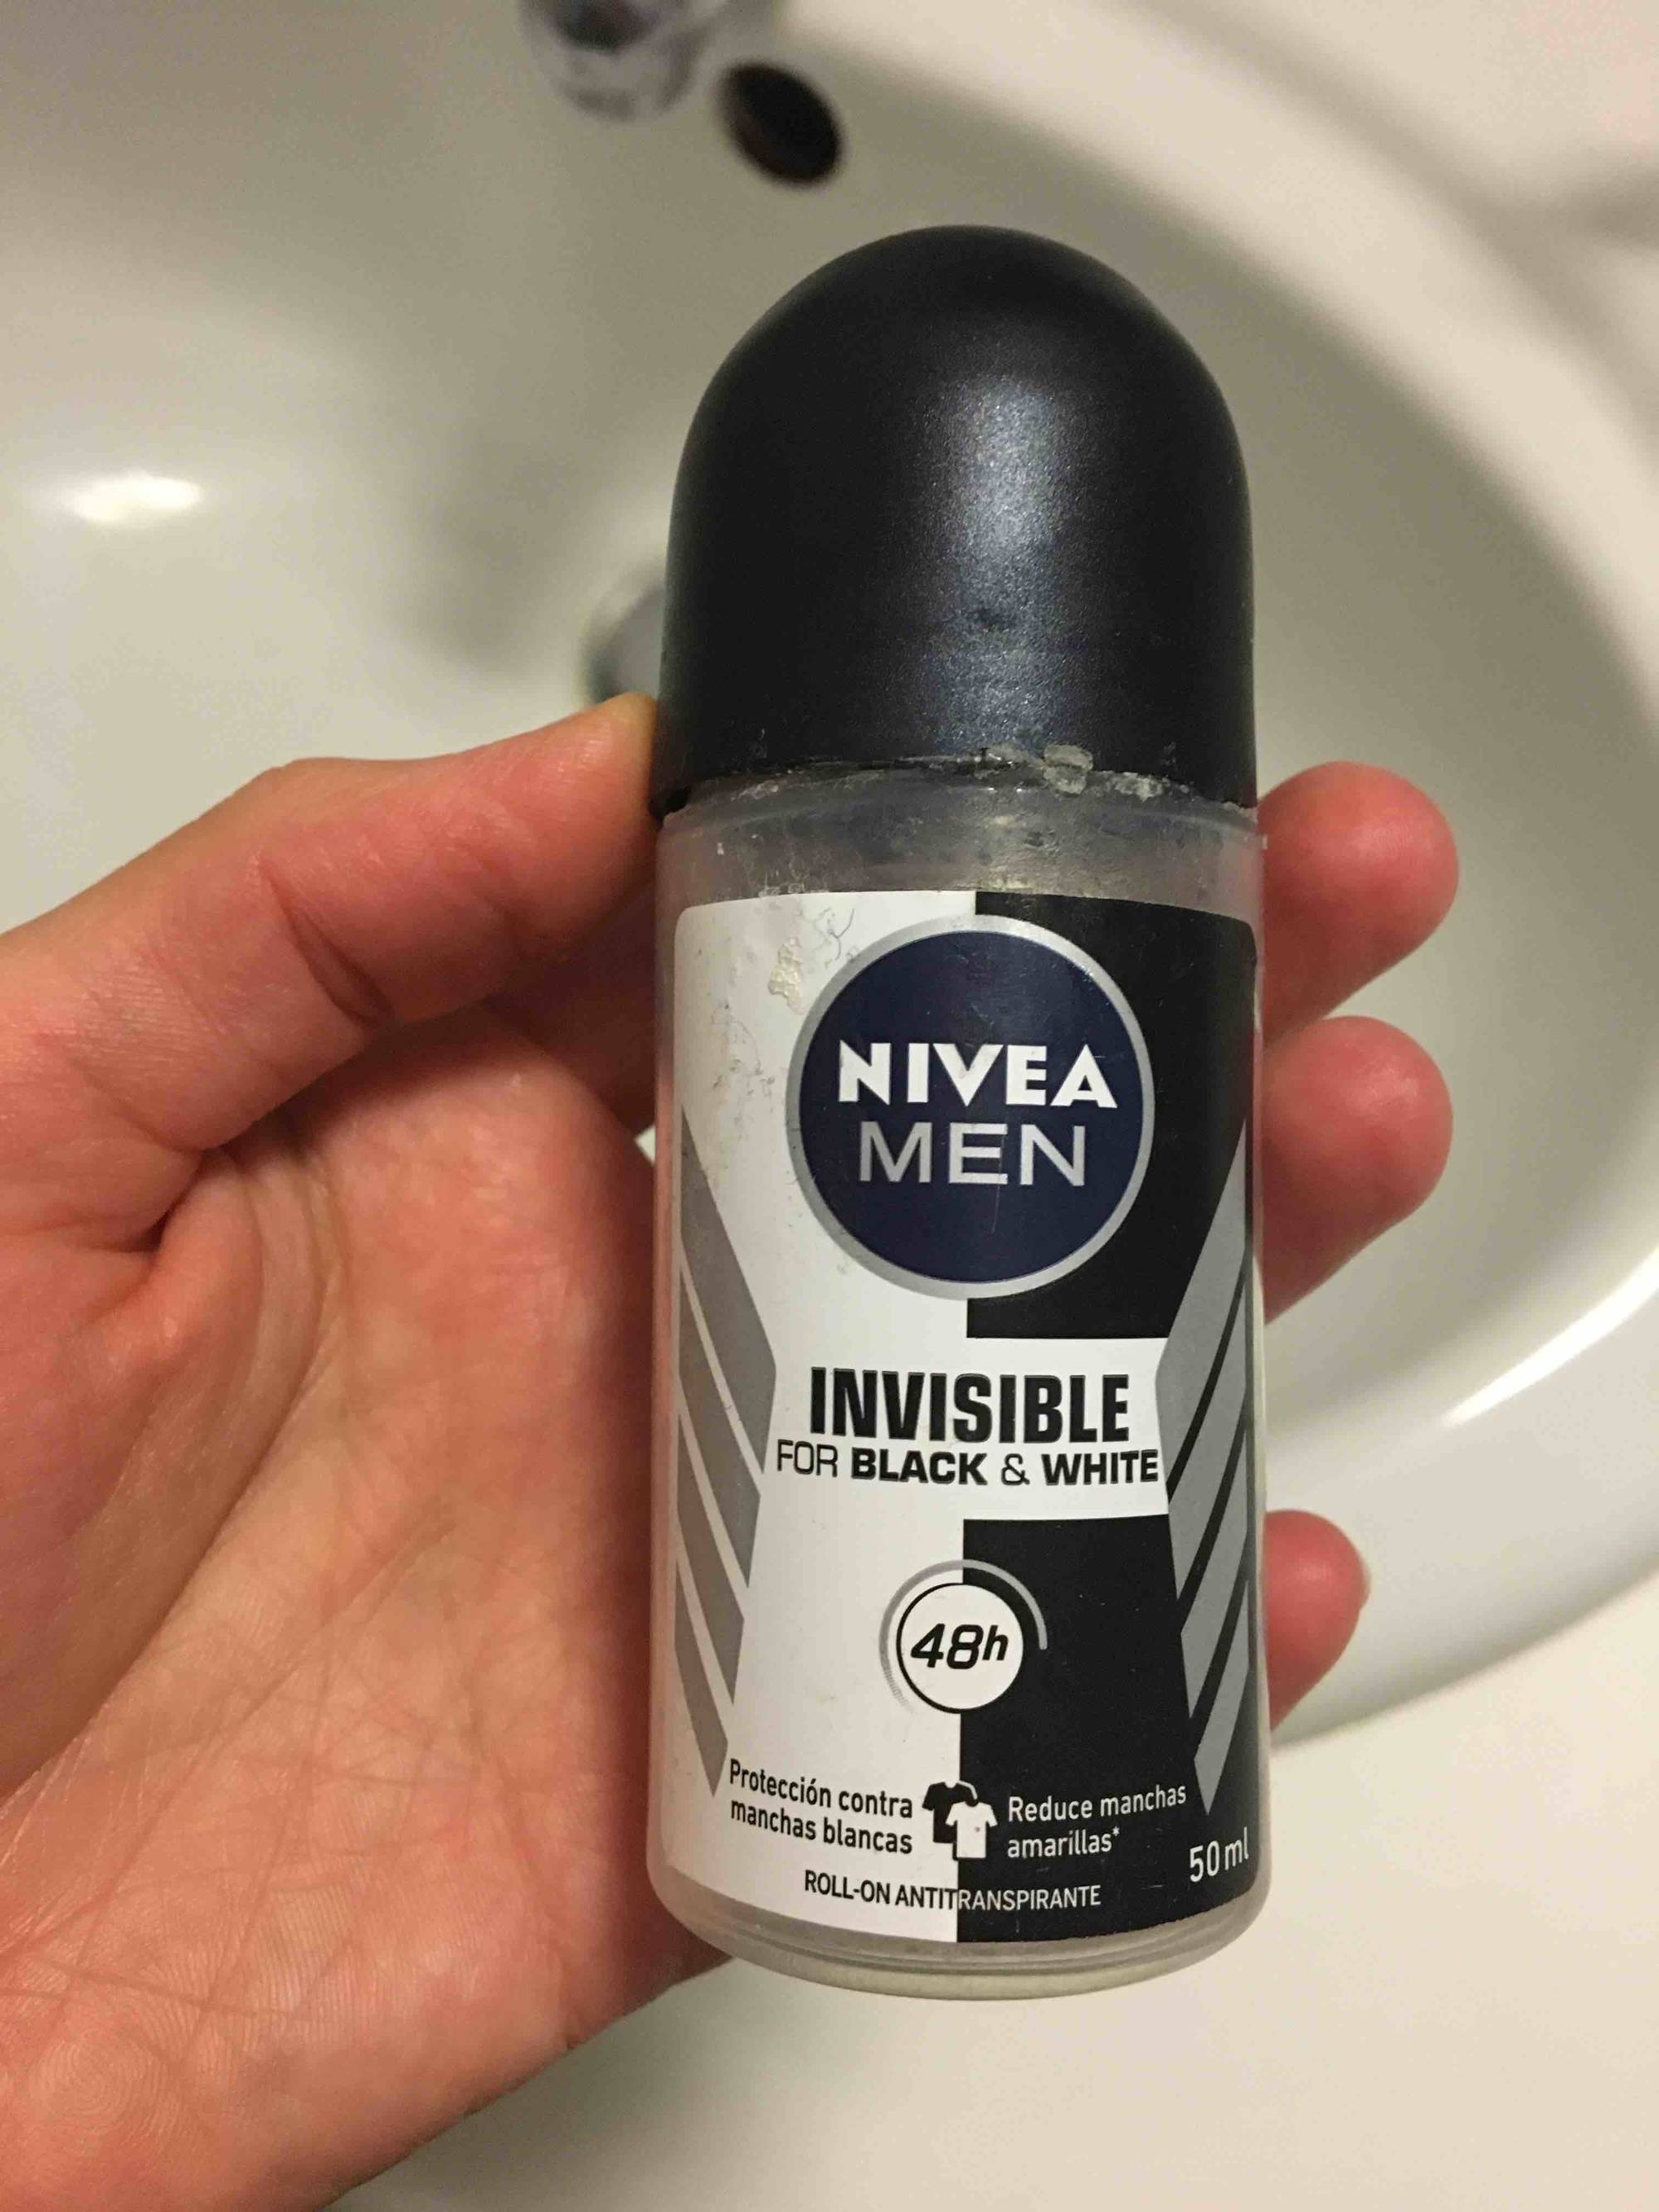 NIVEA MEN - Invisible for black & white - Roll-on antitranspirante 48h